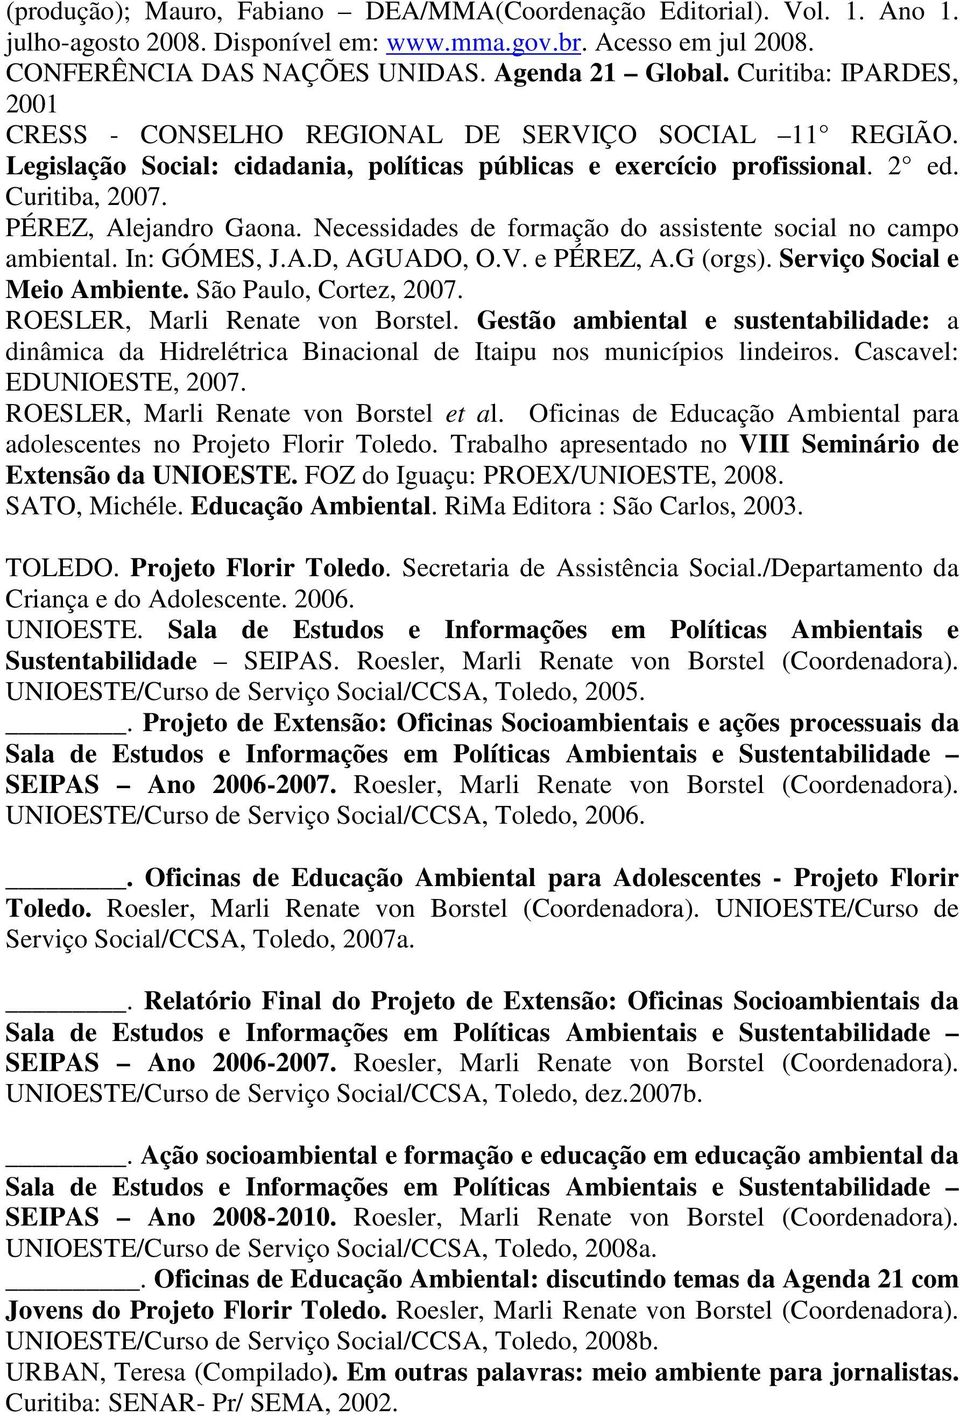 Necessidades de formação do assistente social no campo ambiental. In: GÓMES, J.A.D, AGUADO, O.V. e PÉREZ, A.G (orgs). Serviço Social e Meio Ambiente. São Paulo, Cortez, 2007.